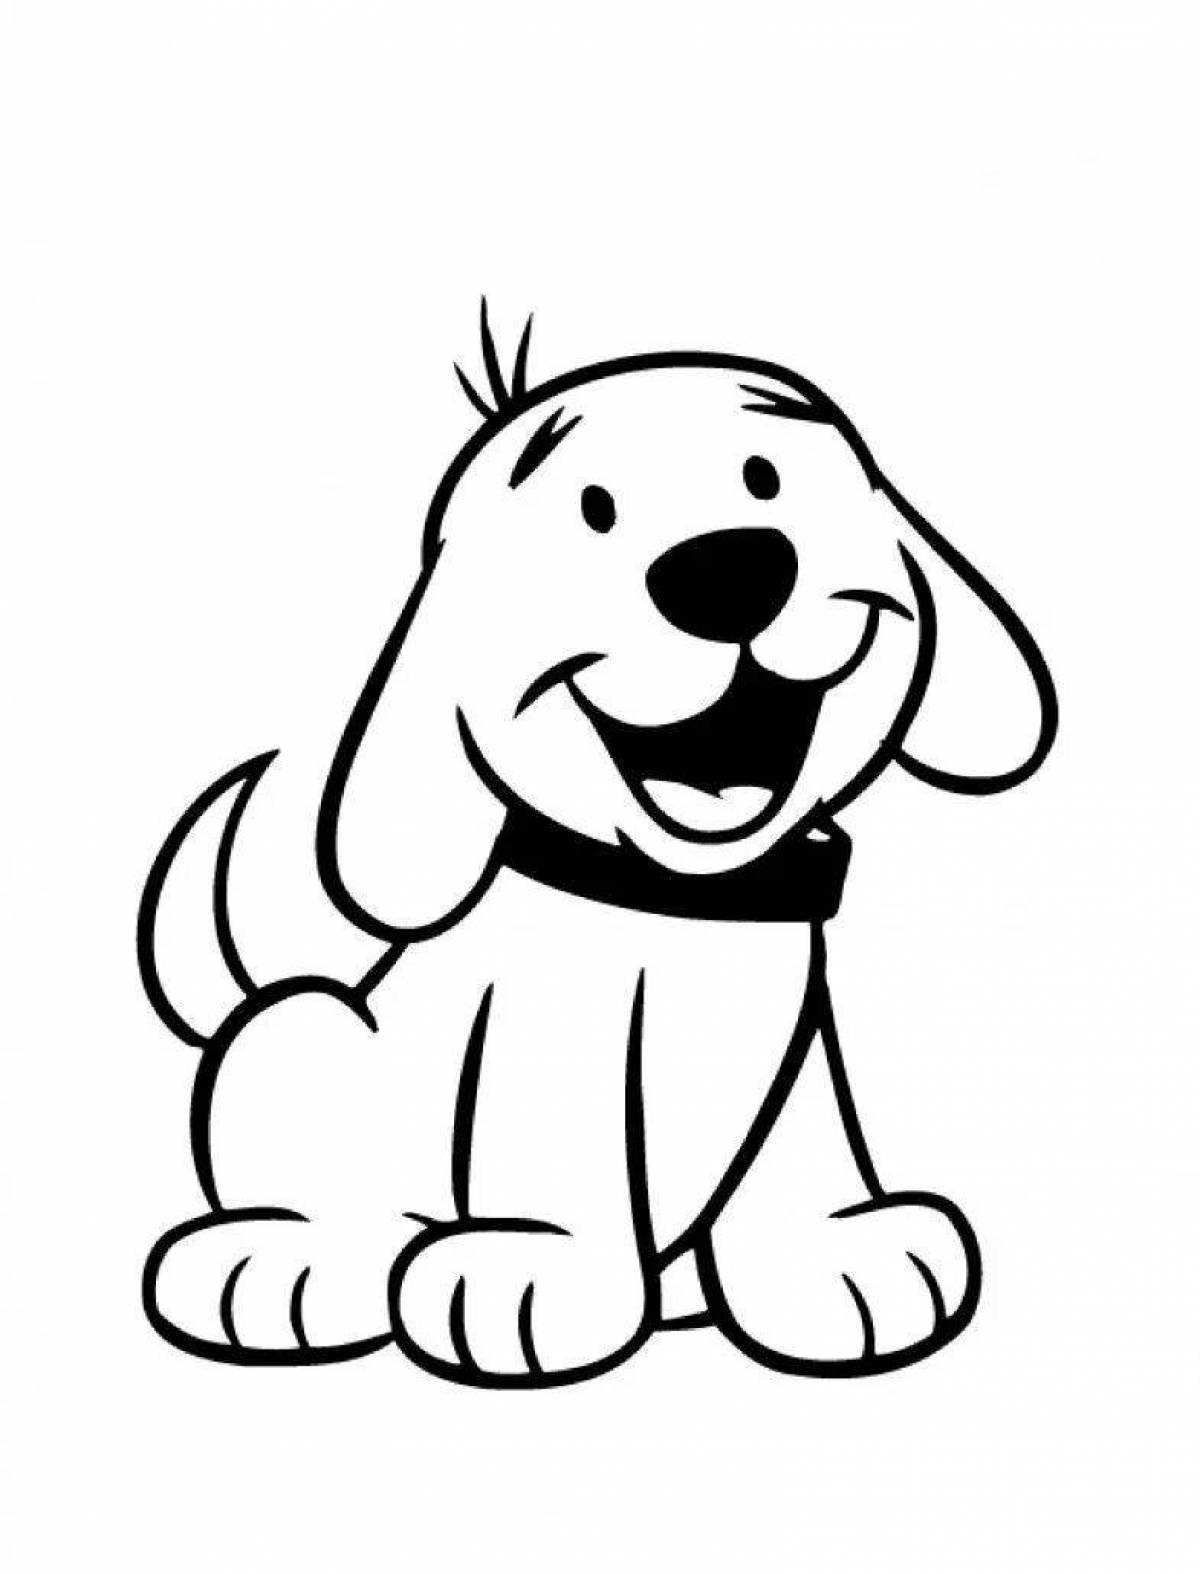 Joyful cartoon dog coloring book